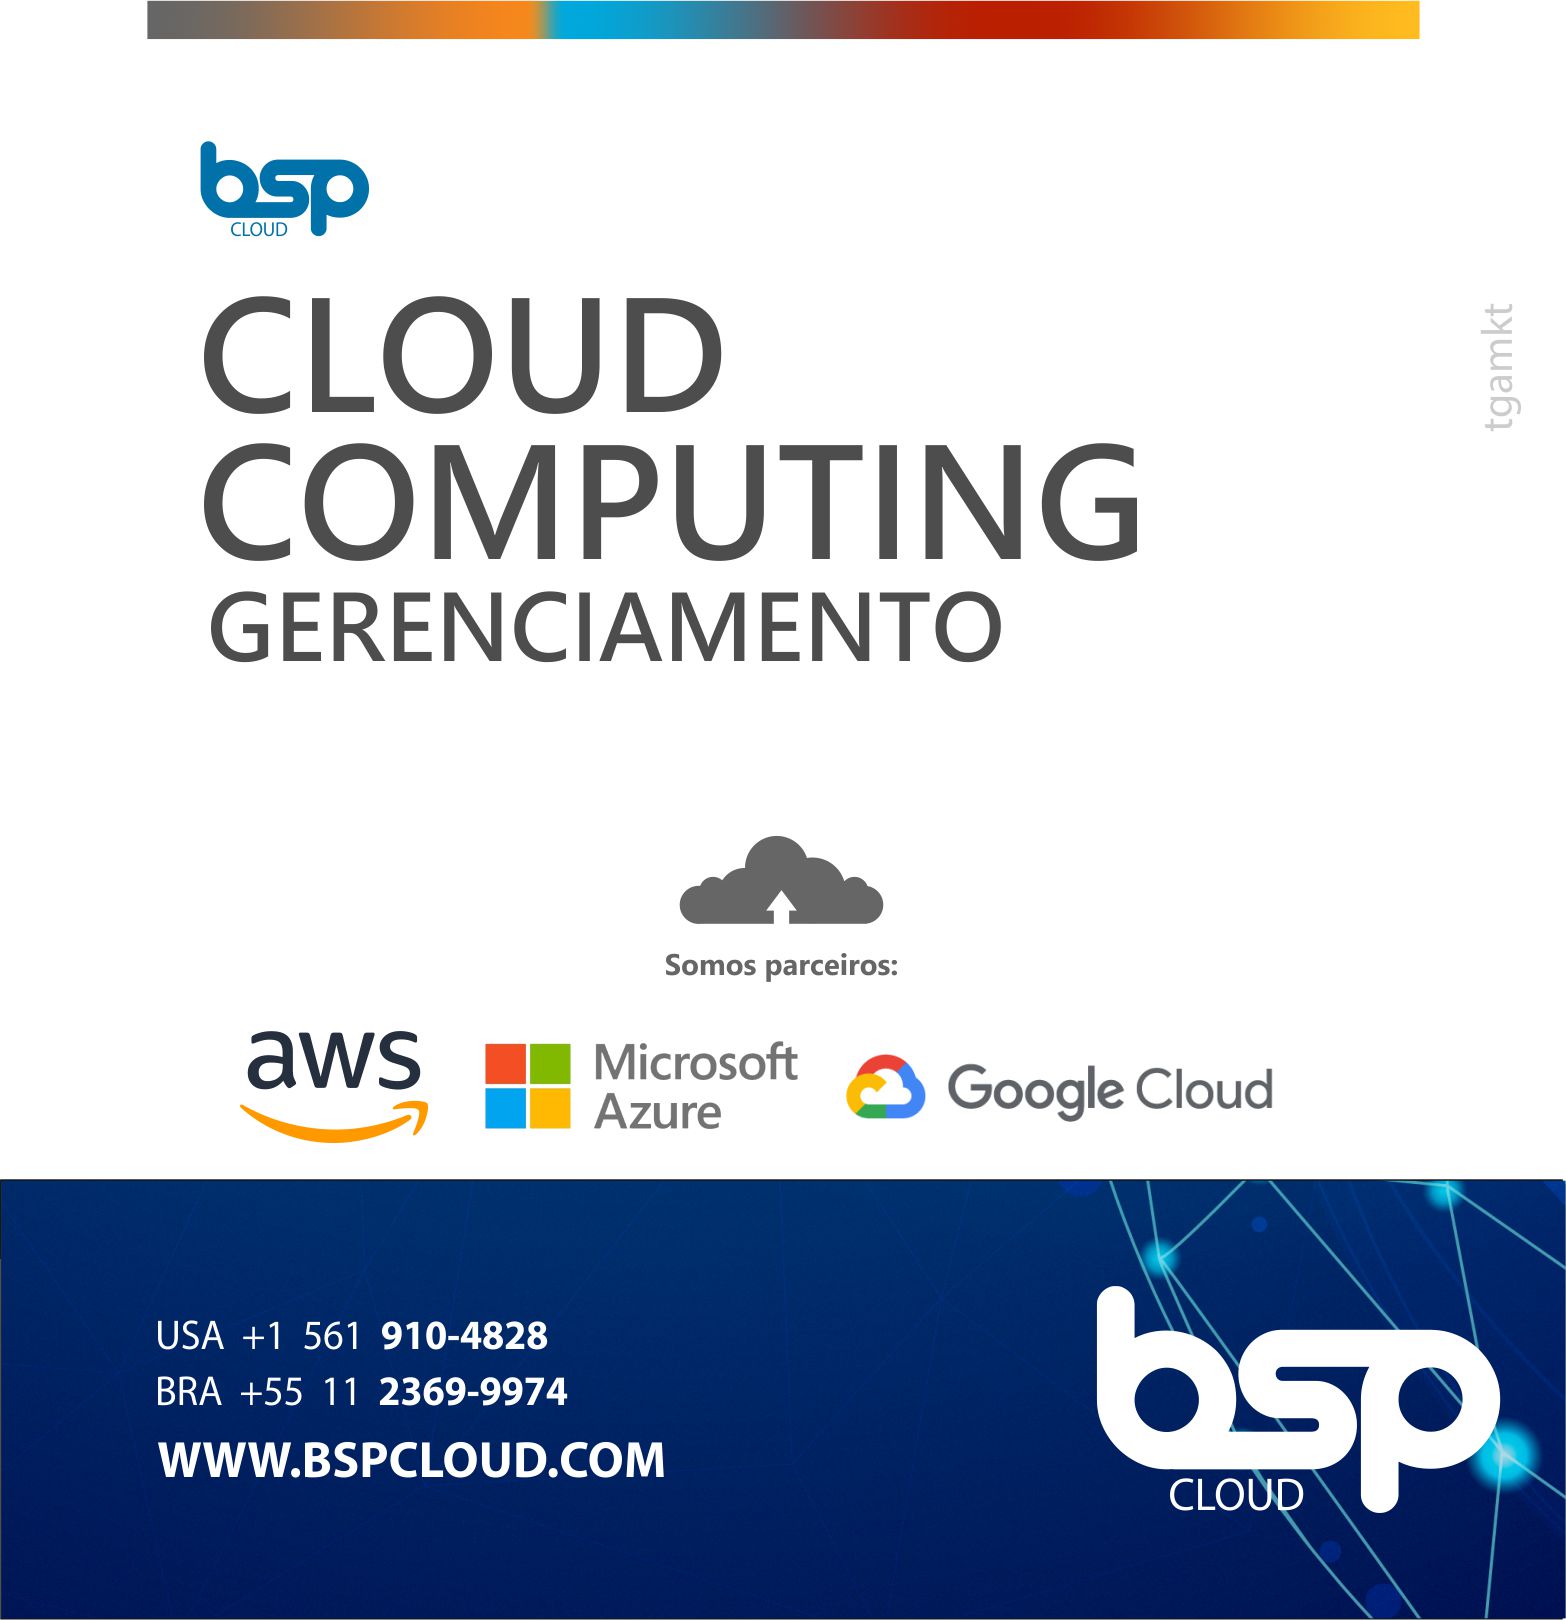 Bsp Cloud Gerenciamento